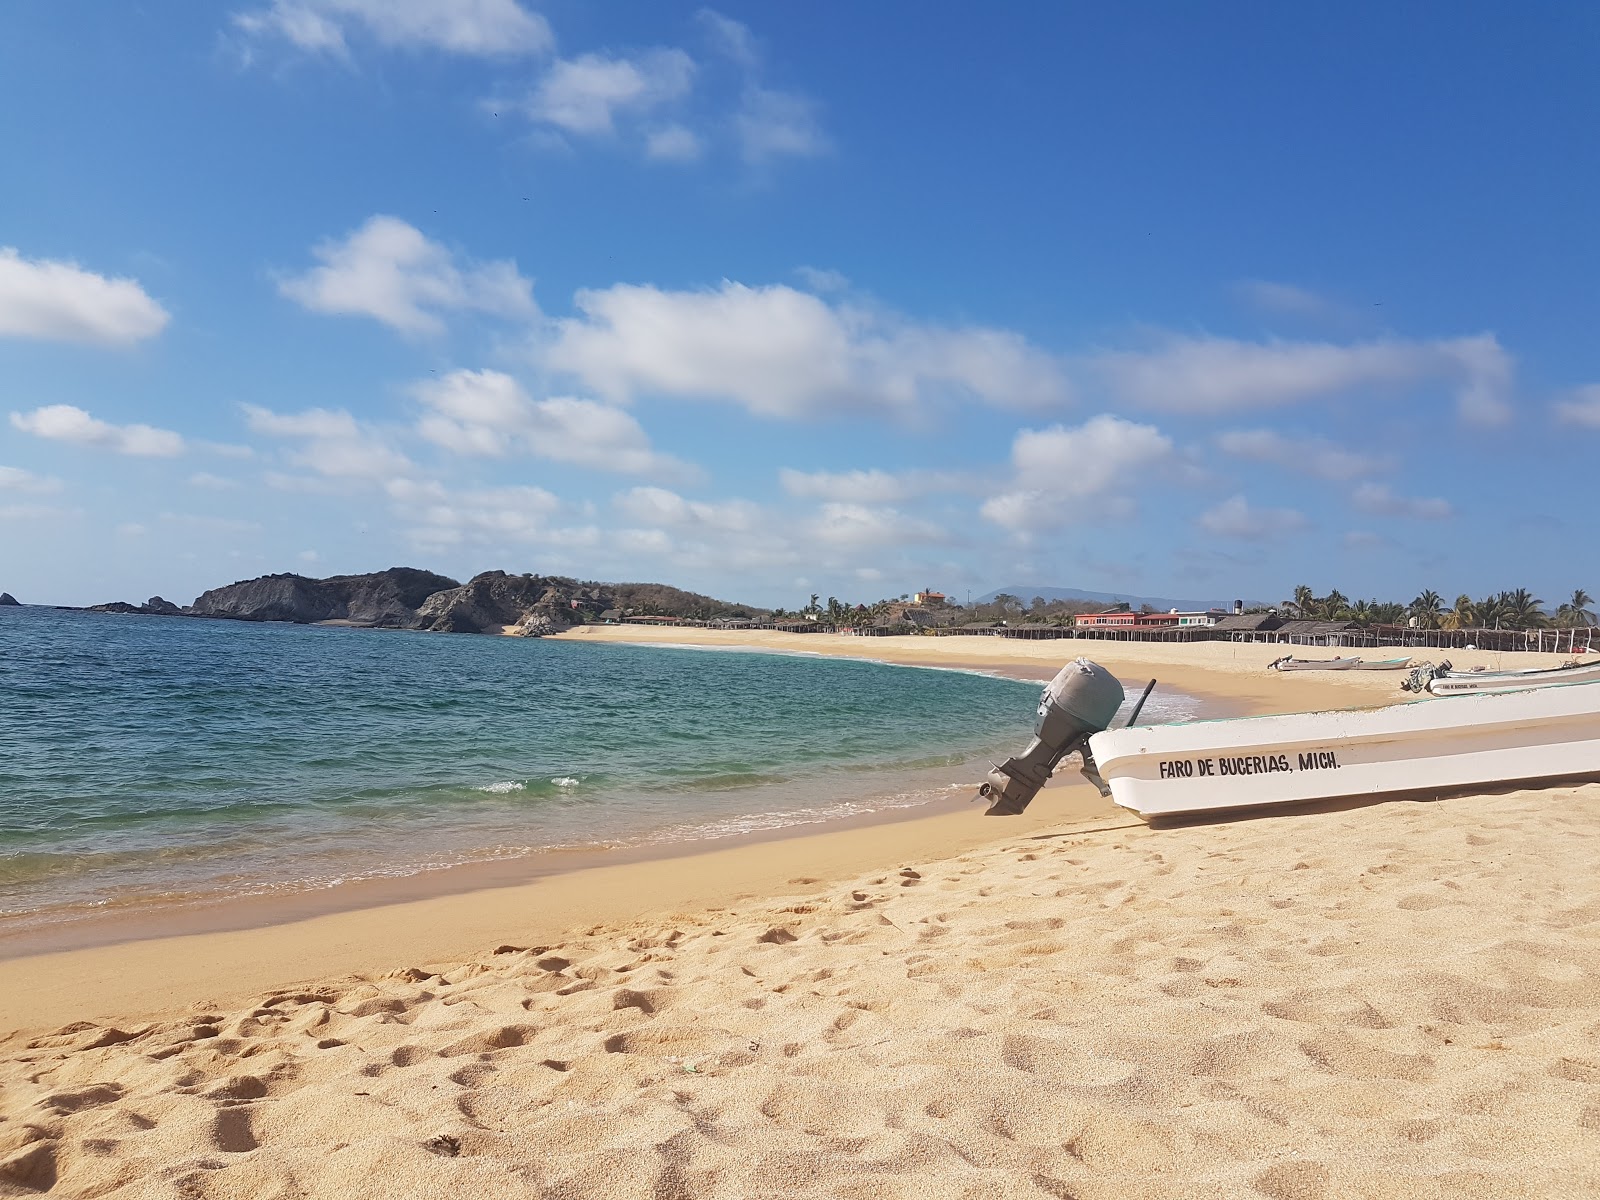 Foto de Playa el Faro - lugar popular entre os apreciadores de relaxamento